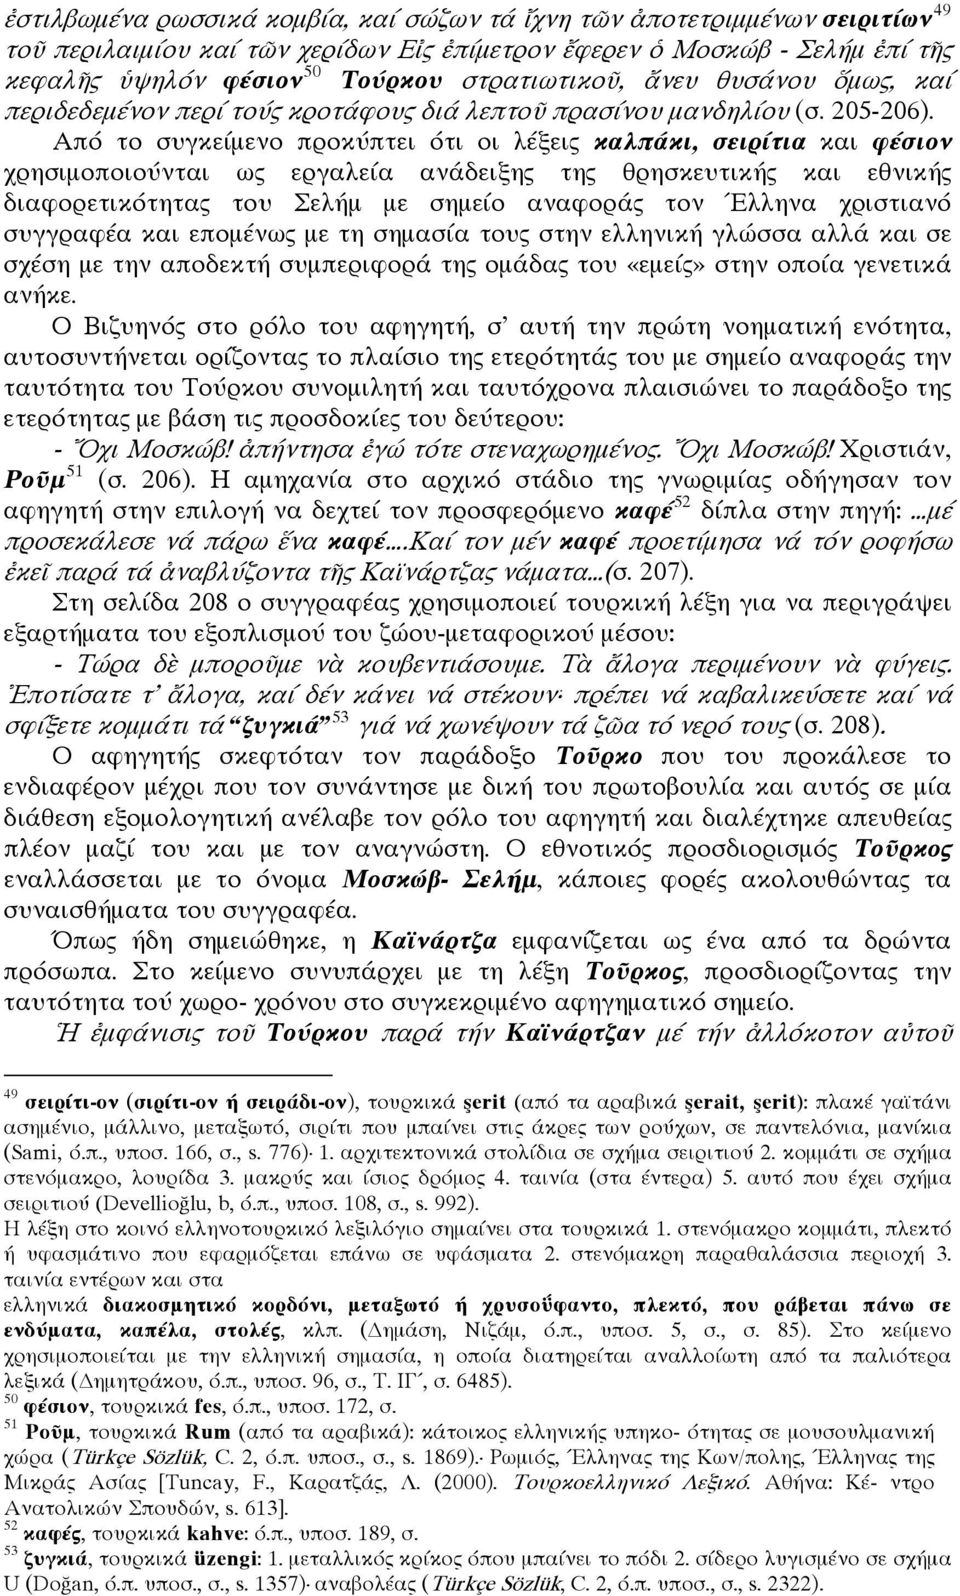 Από το συγκείμενο προκύπτει ότι οι λέξεις καλπάκι, σειρίτια και φέσιον χρησιμοποιούνται ως εργαλεία ανάδειξης της θρησκευτικής και εθνικής διαφορετικότητας του Σελήμ με σημείο αναφοράς τον Έλληνα